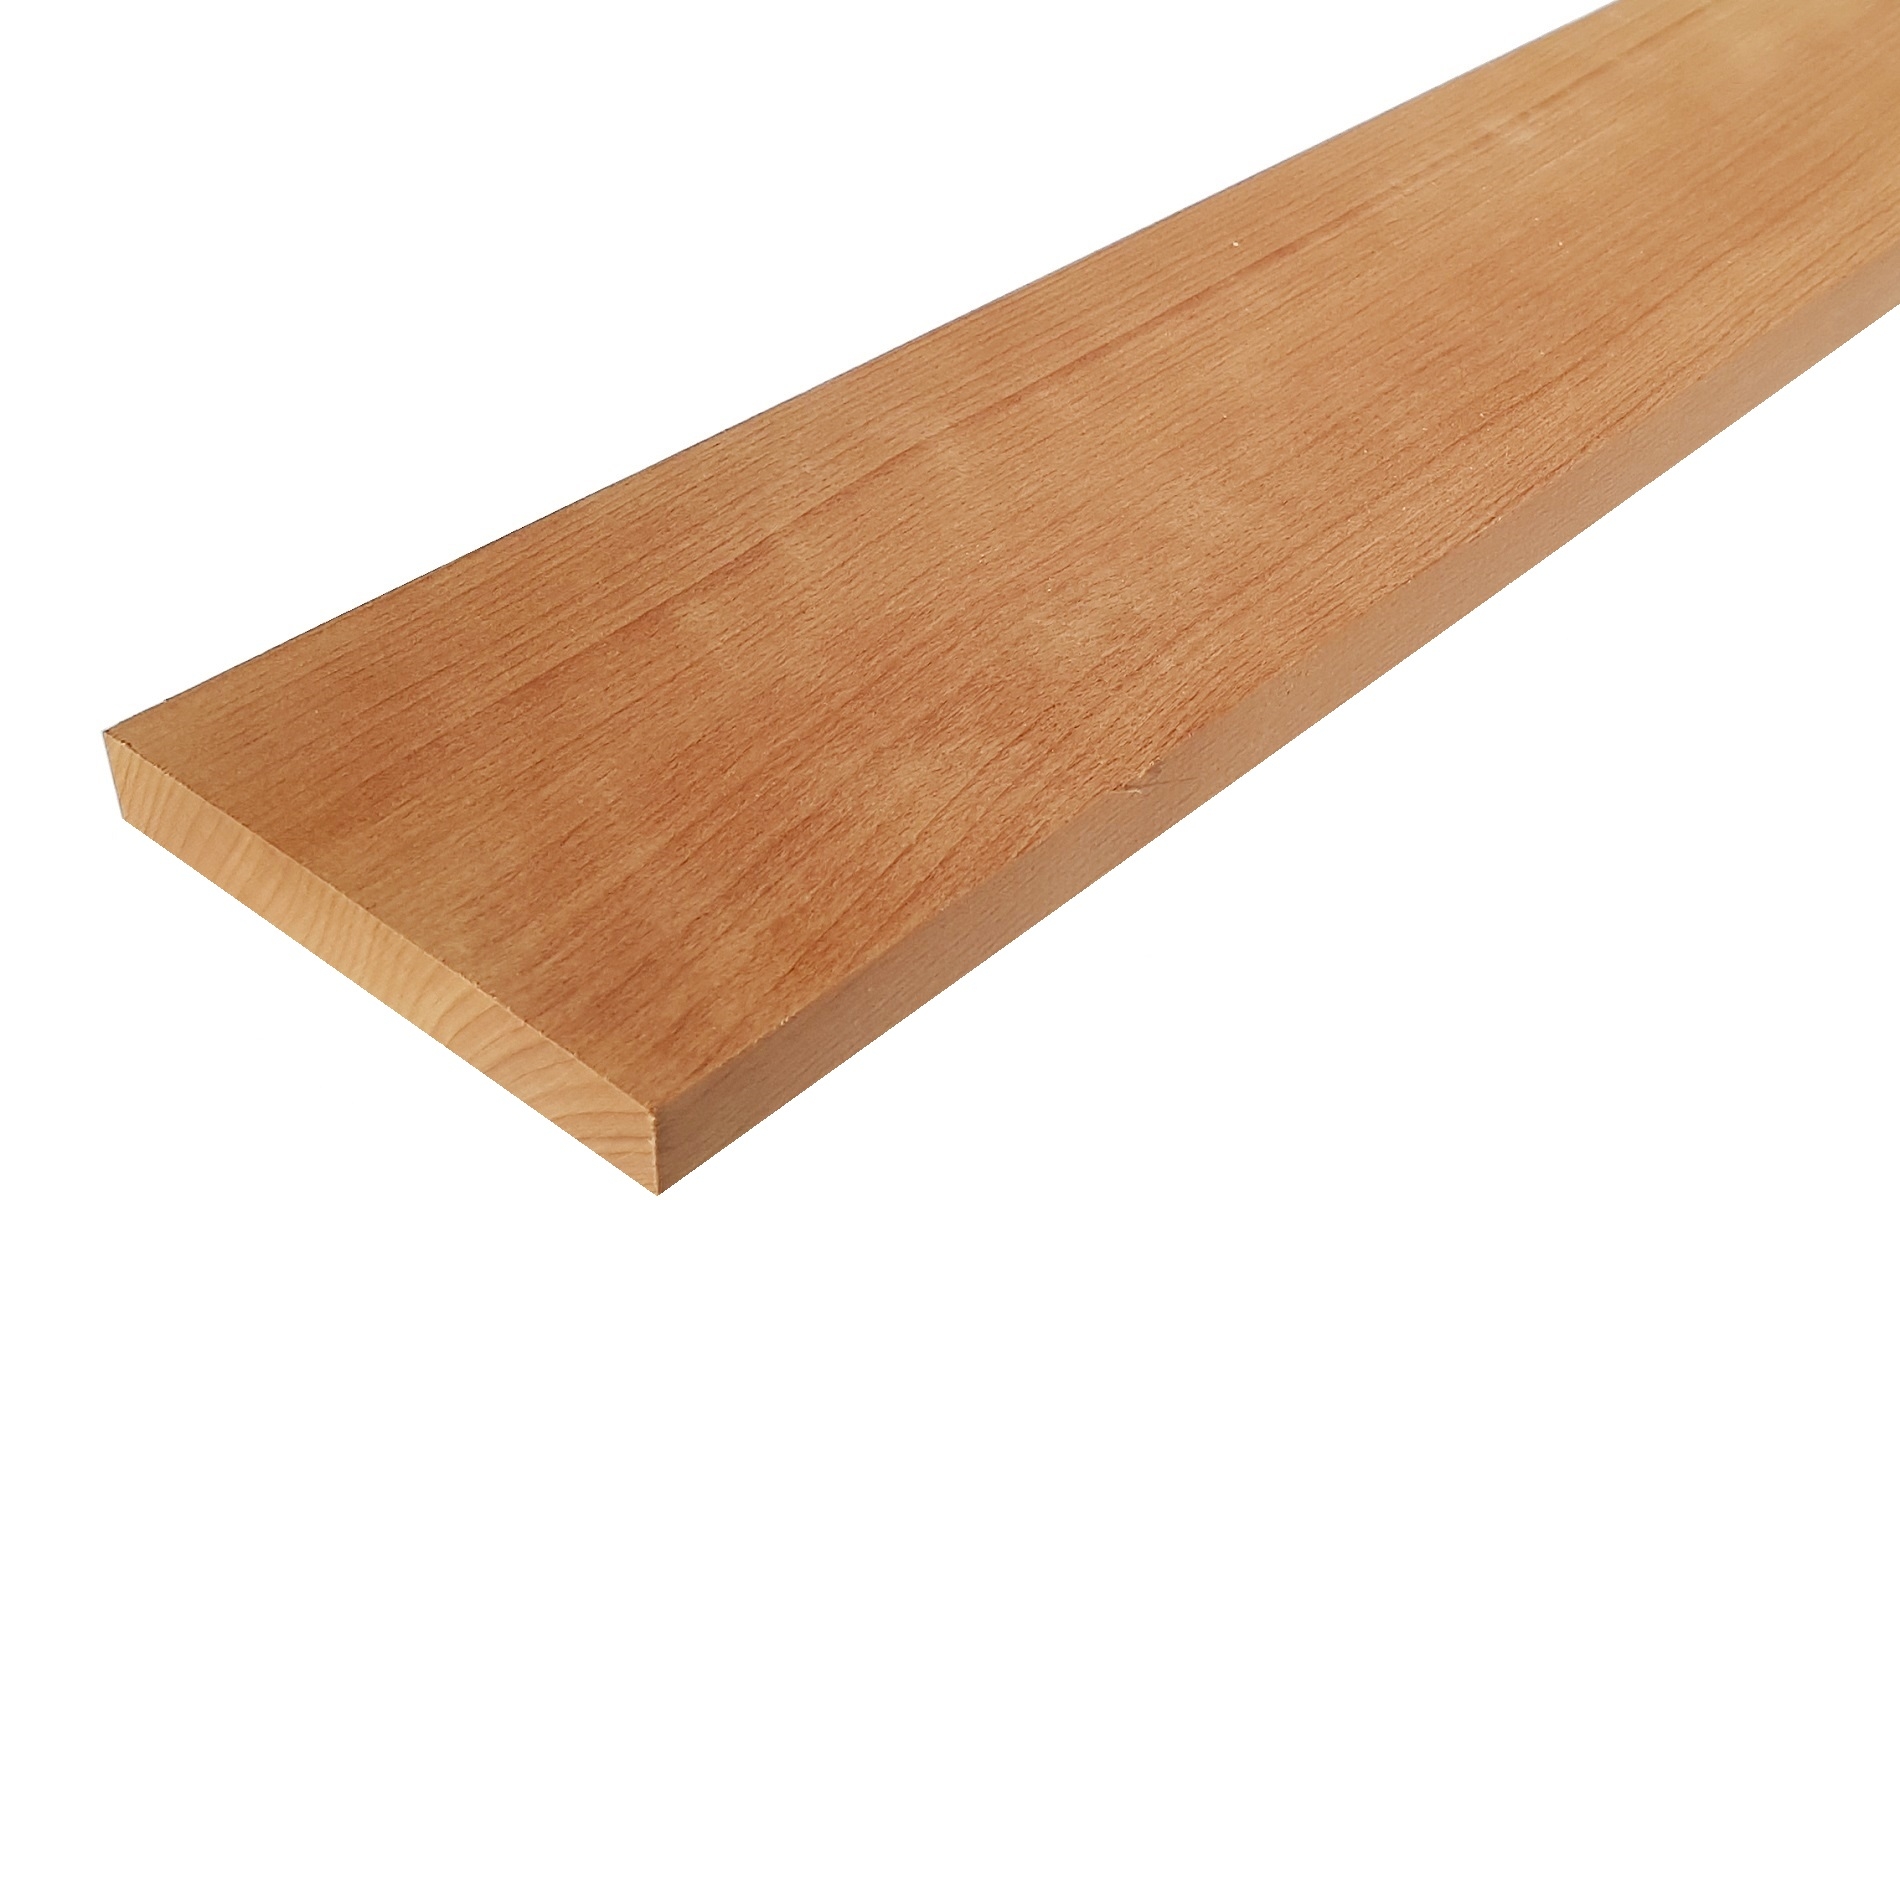 Righello con 4 scomparti Milward in legno di faggio 25 x 10 cm 